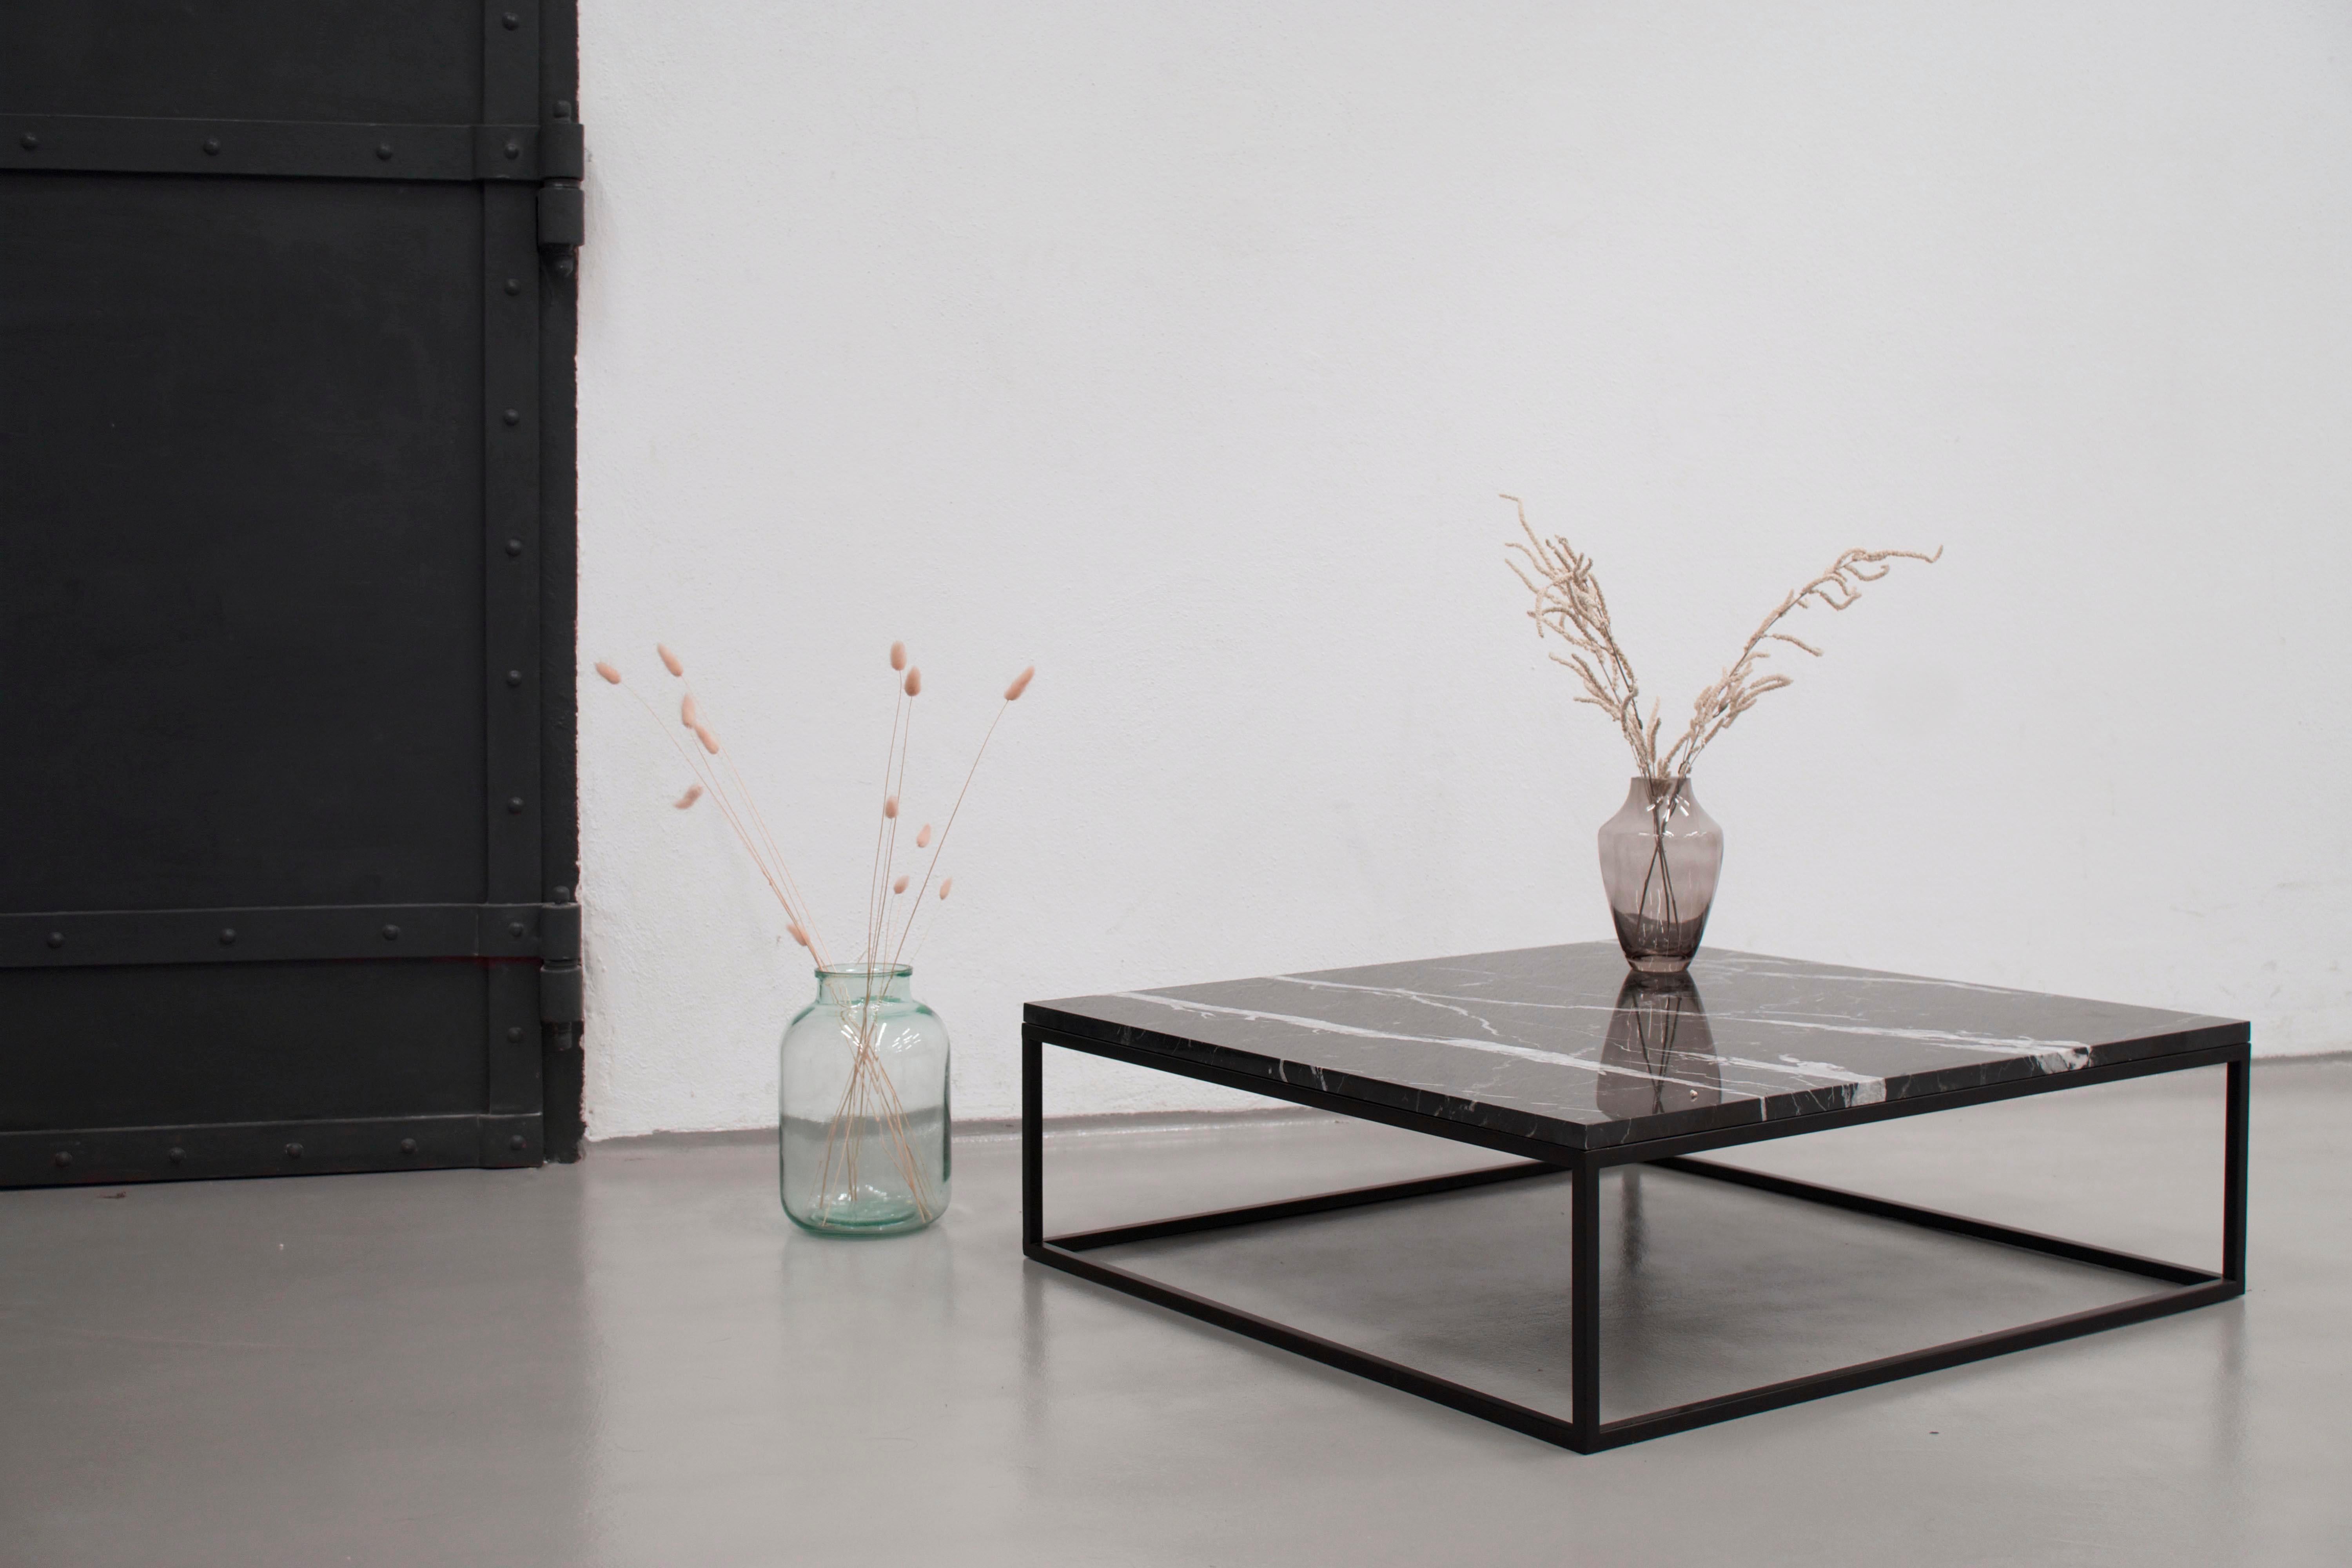 La table basse DIONE est un meuble raffiné, qui attire l'attention par sa forme élancée et minimaliste. Le plateau est en marbre noir Nero Marquina ou en marbre blanc Carrara. 
La table a un aspect moderne grâce à sa faible hauteur, et elle sera